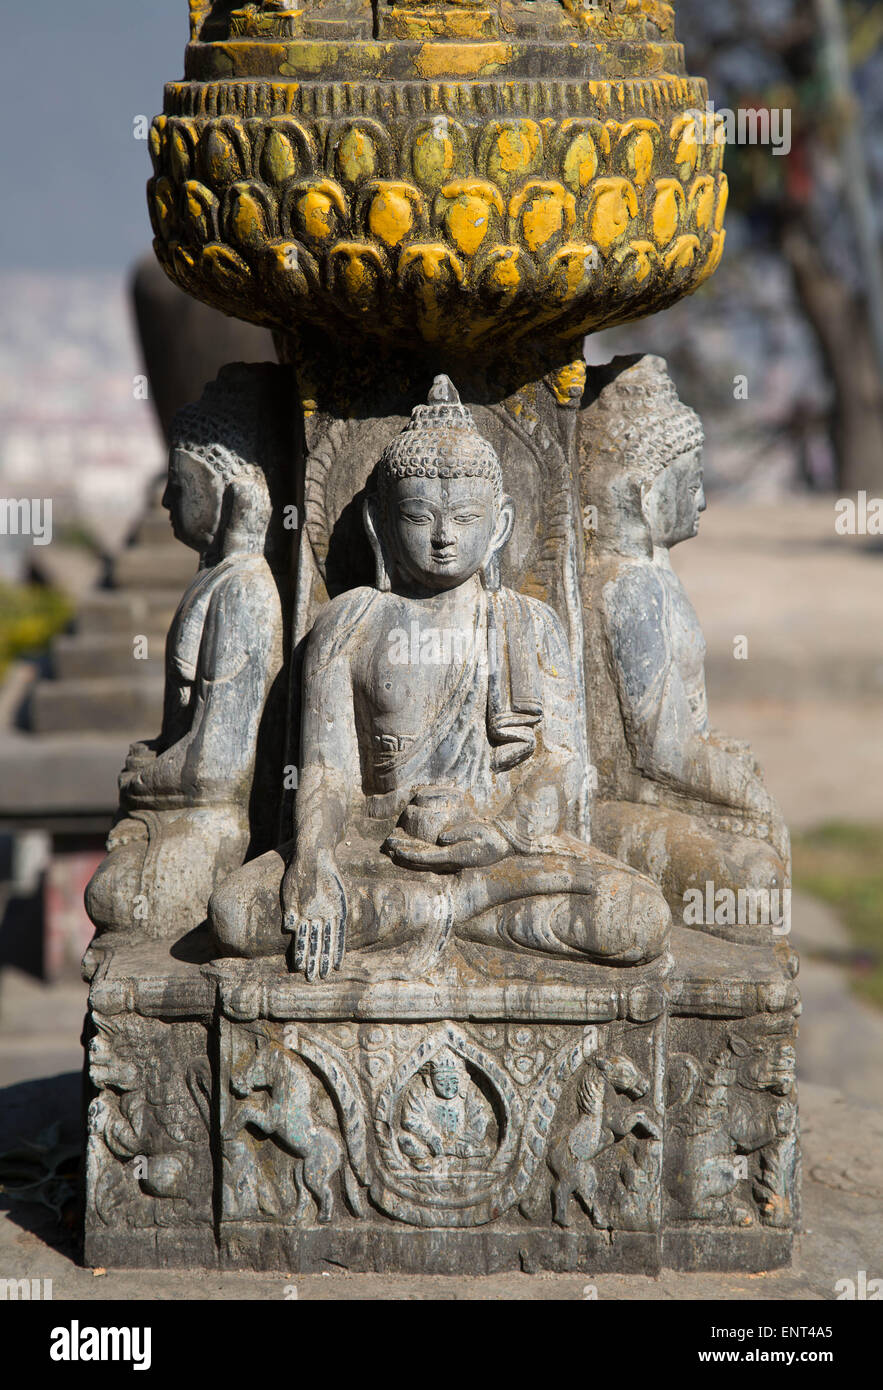 Old Buddhist Statue, Swayambhunath Monkey Temple, Kathmandu, Nepal Stock Photo